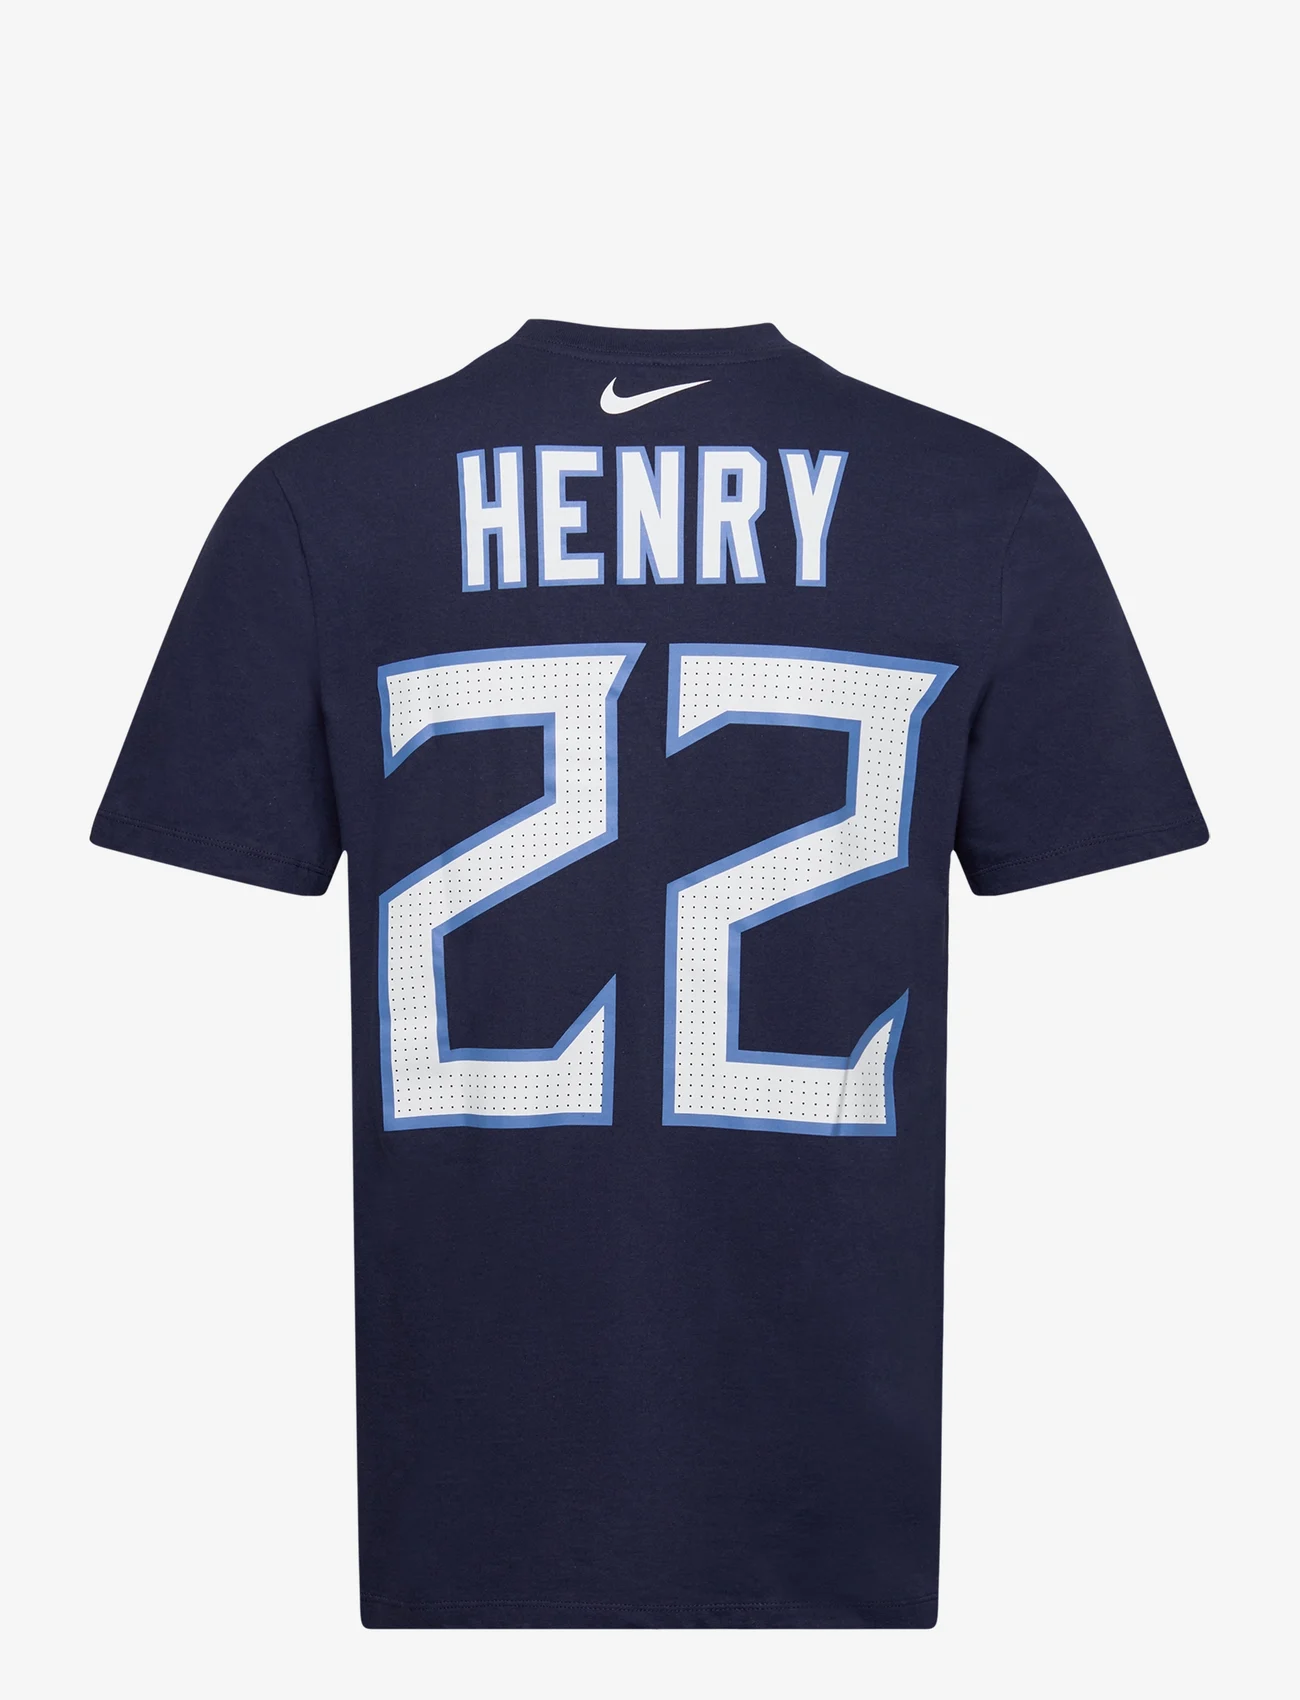 NIKE Fan Gear - Nike NFL Tennessee Titans T-Shirt Henry no 22 - palaidinės ir marškinėliai - college navy - 1